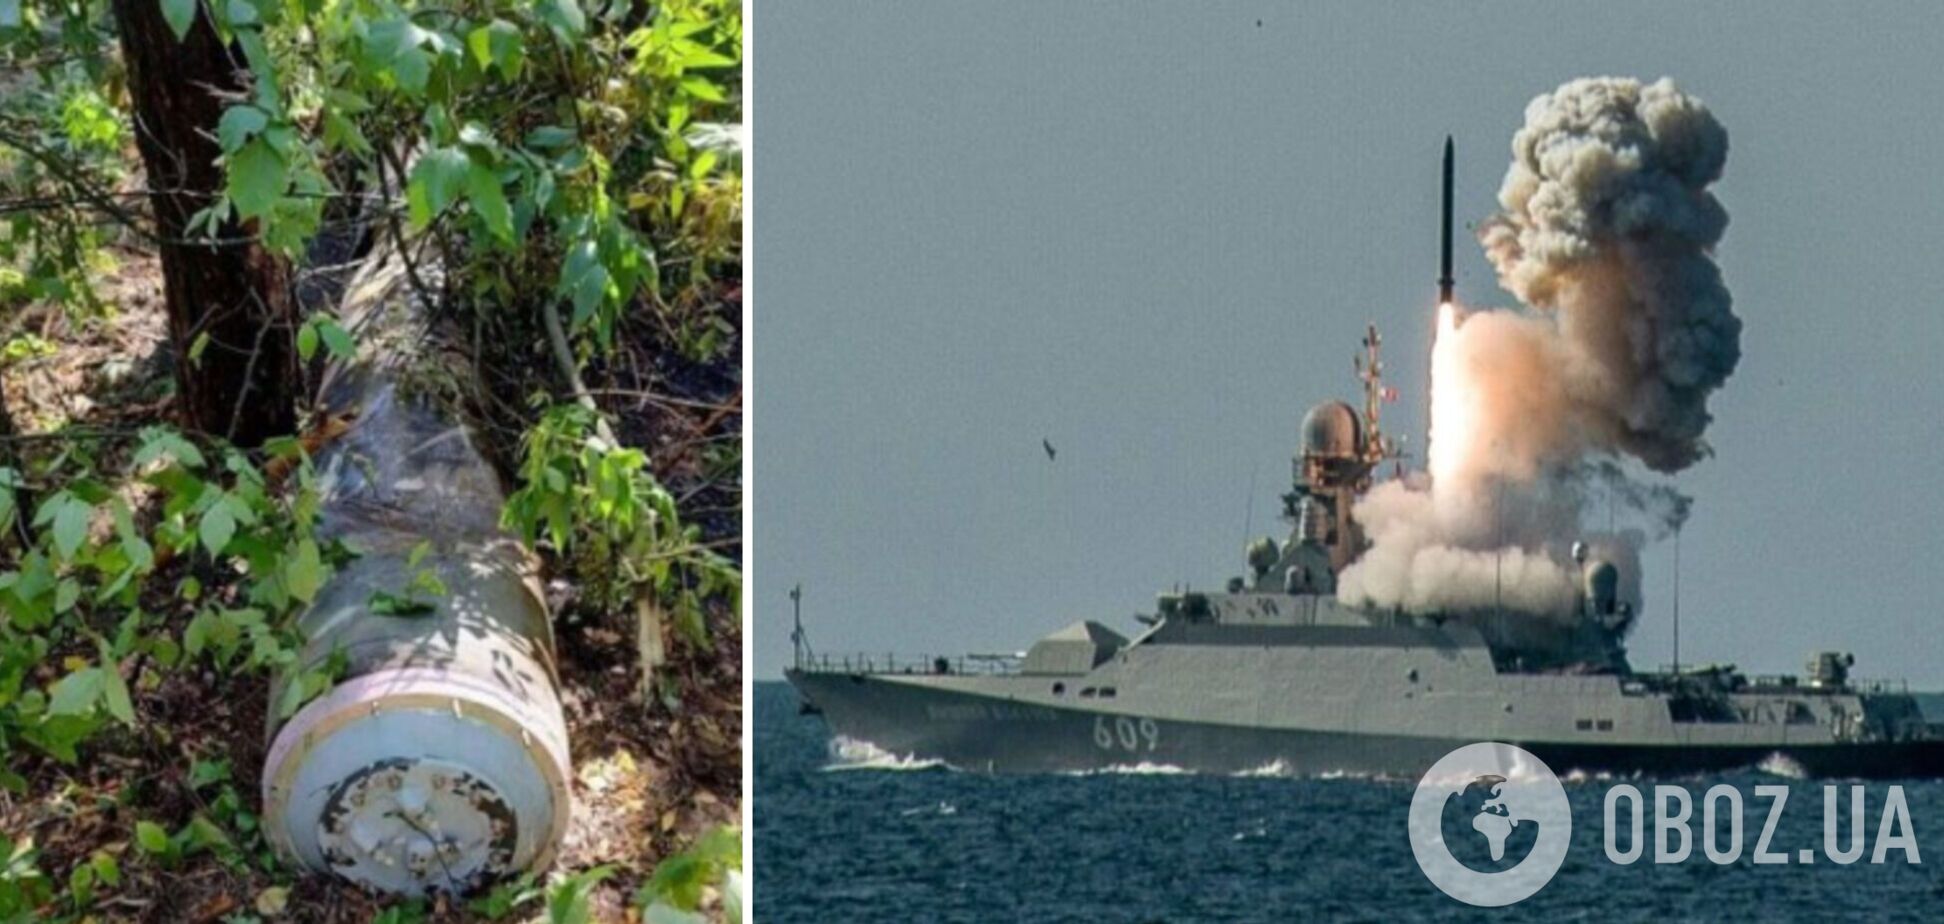 Не долетела до цели: в оккупированном Крыму упала российская ракета 'Калибр'